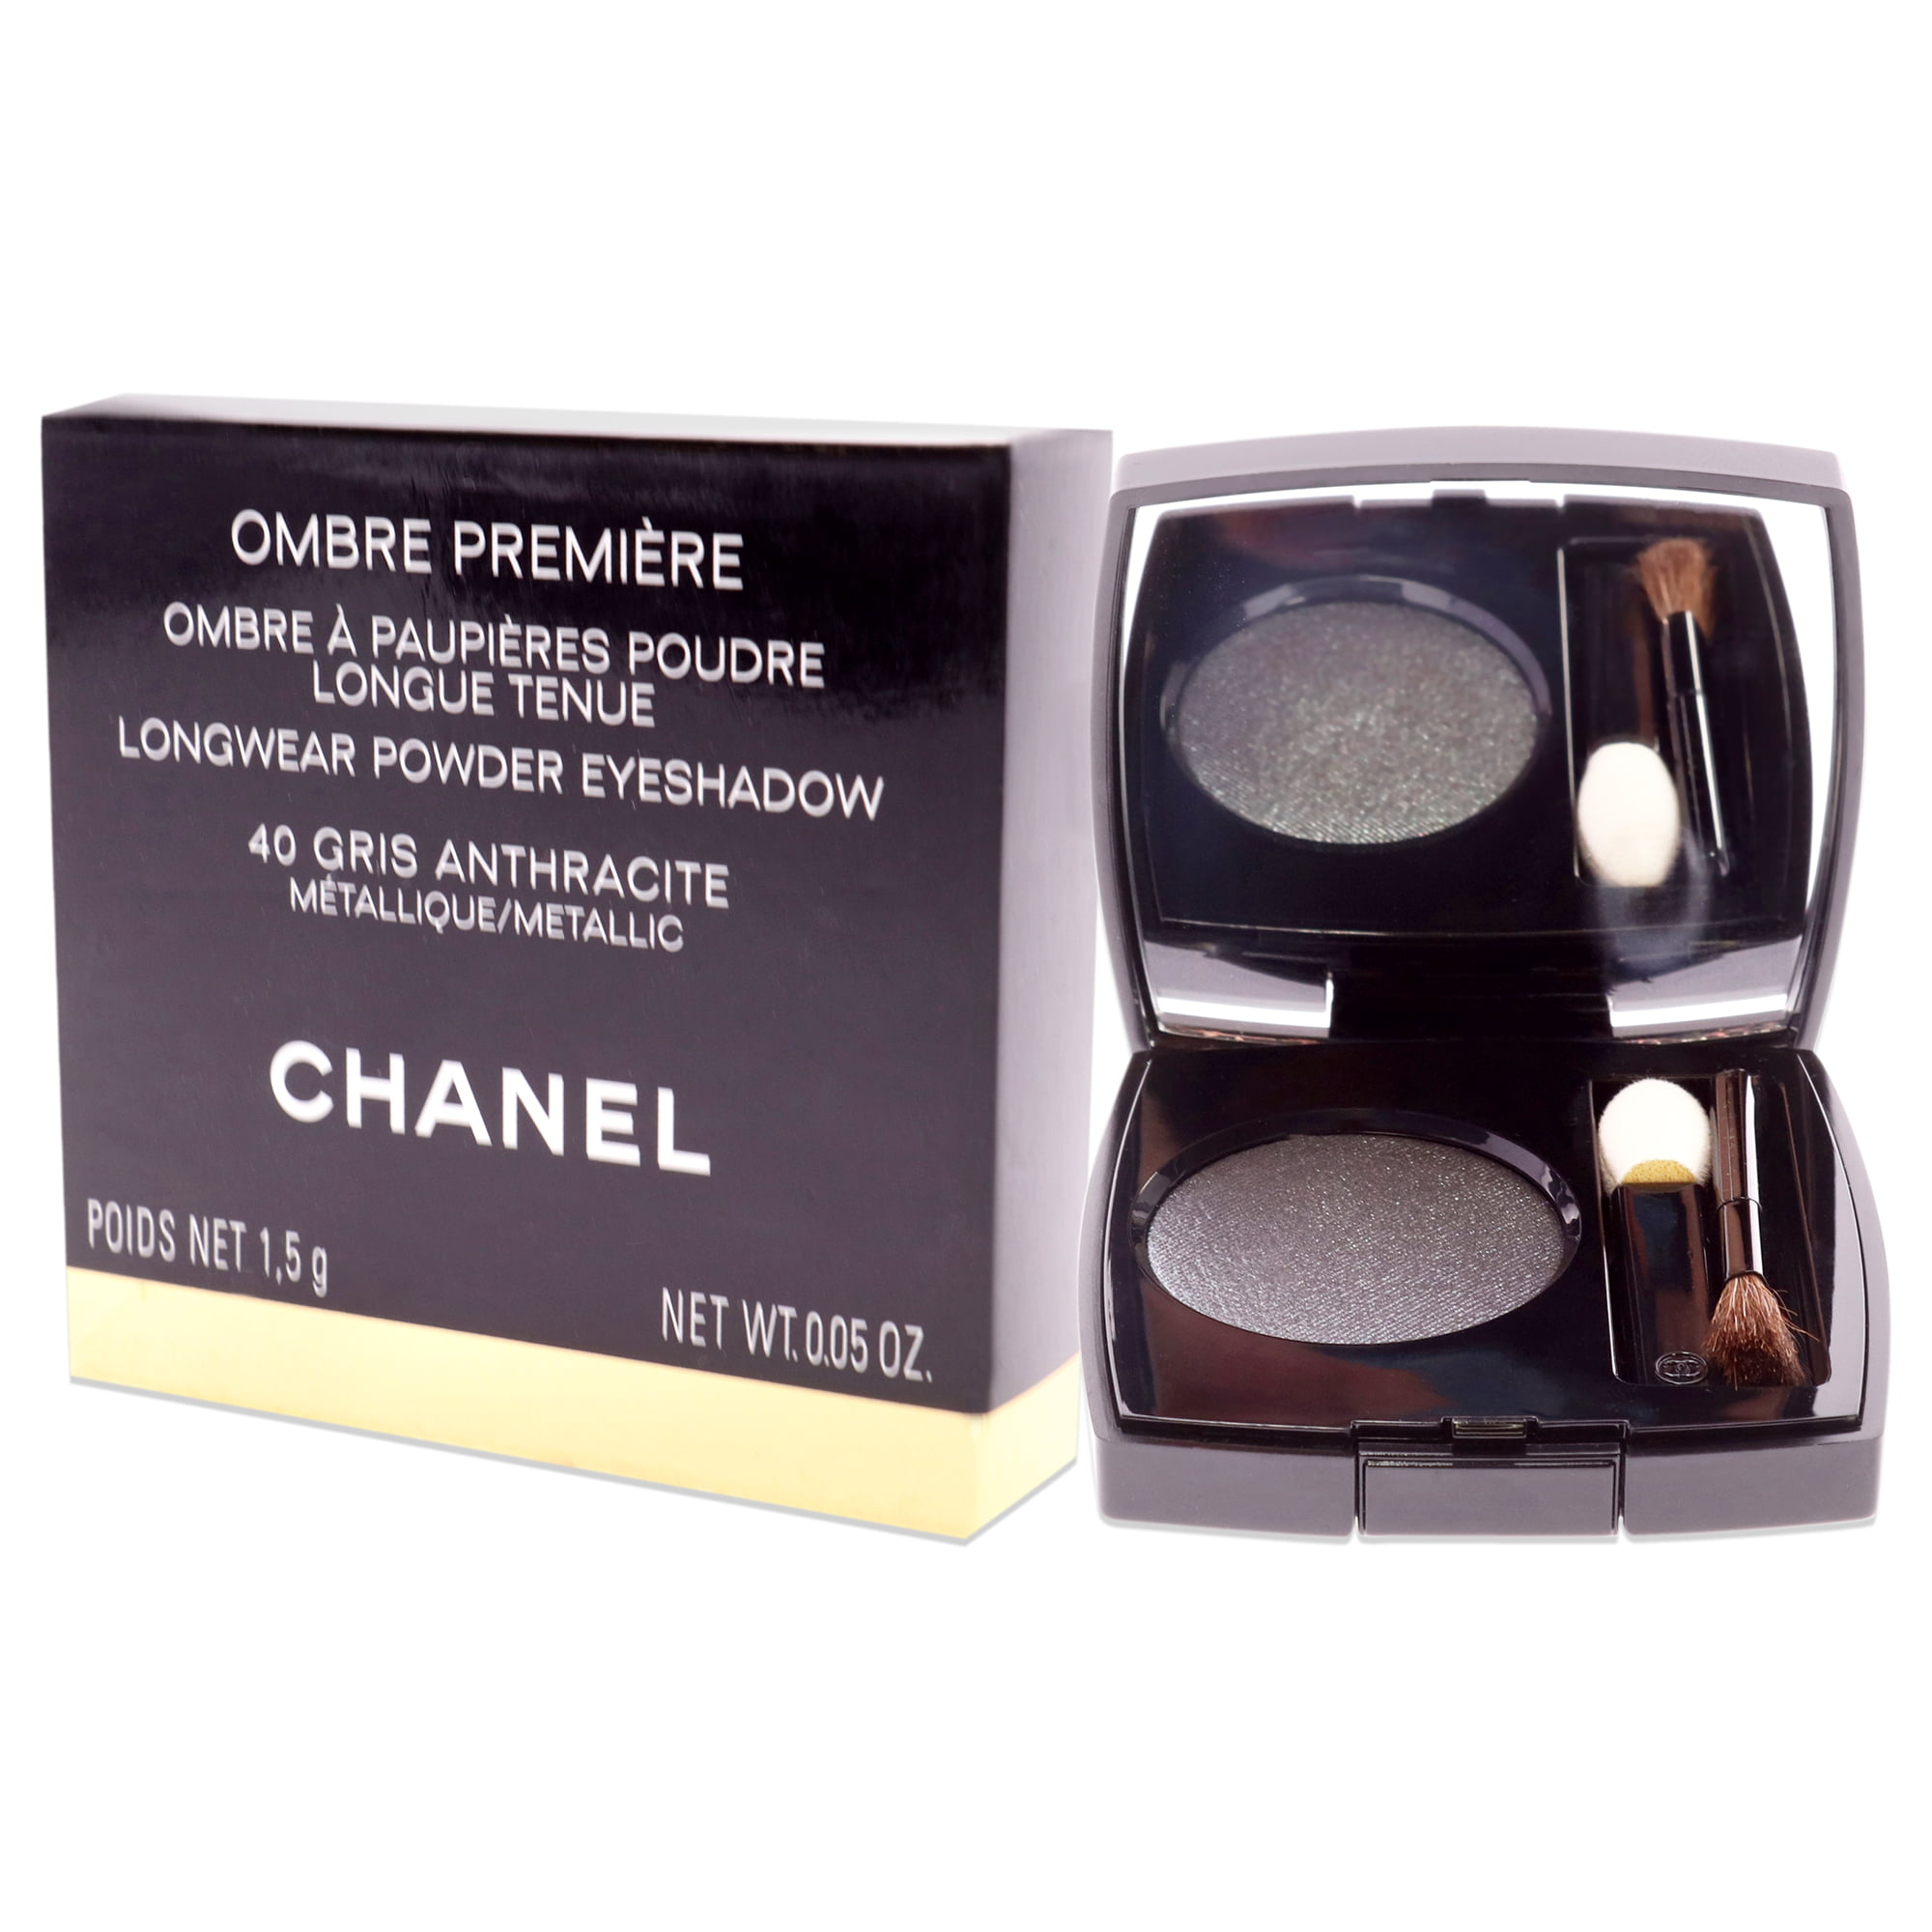 Chanel Ombre Premiere Longwear Powder Eyeshadow - 40 Gris